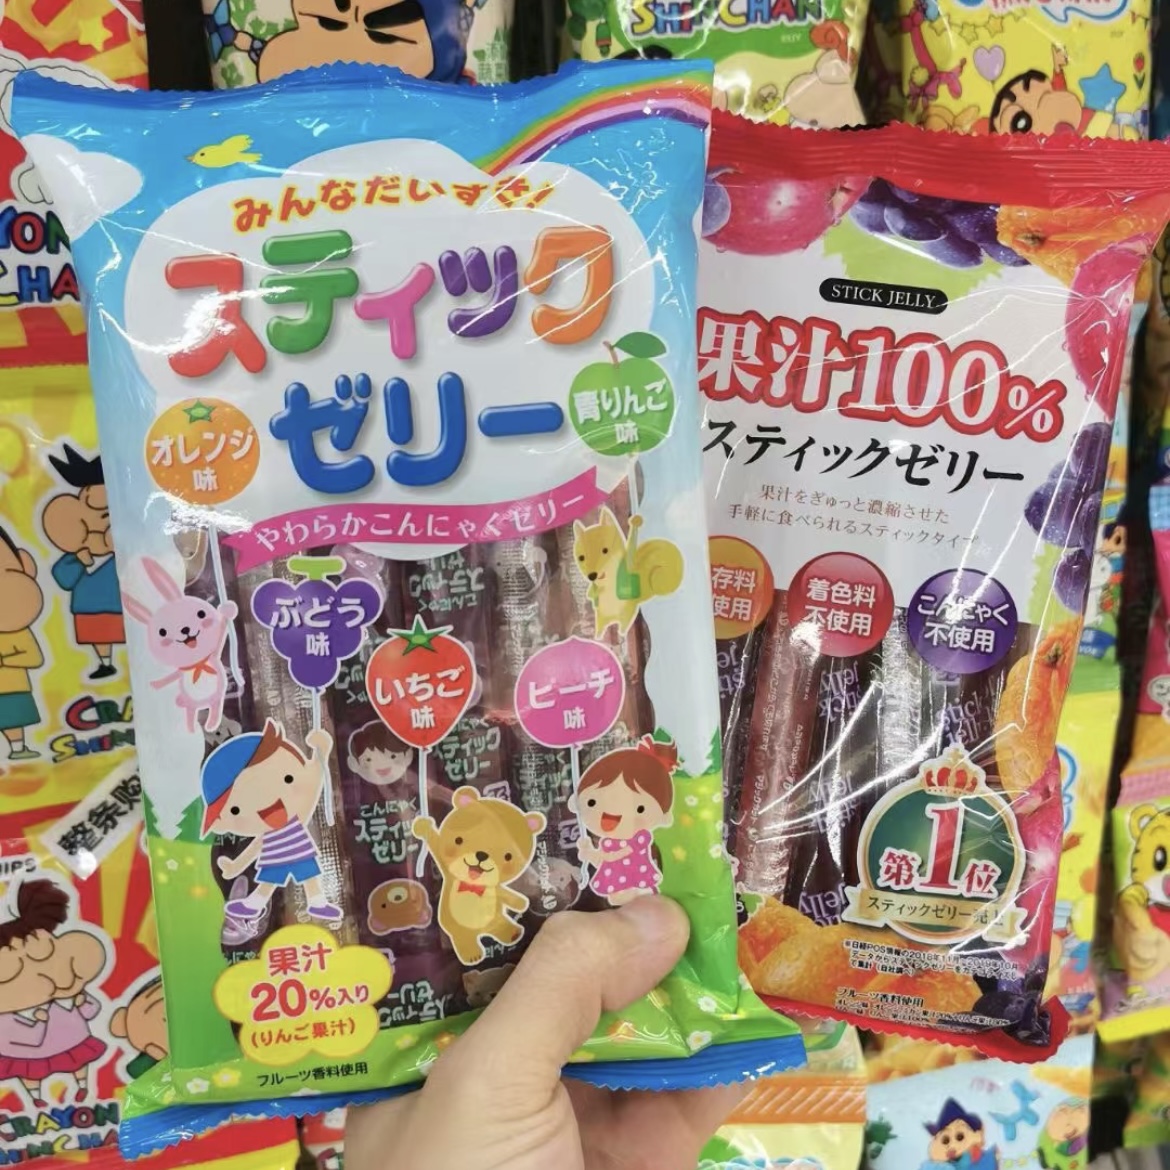 日本理本ribon儿童果冻条无添加色素宝宝果冻健康幼儿园分享零食